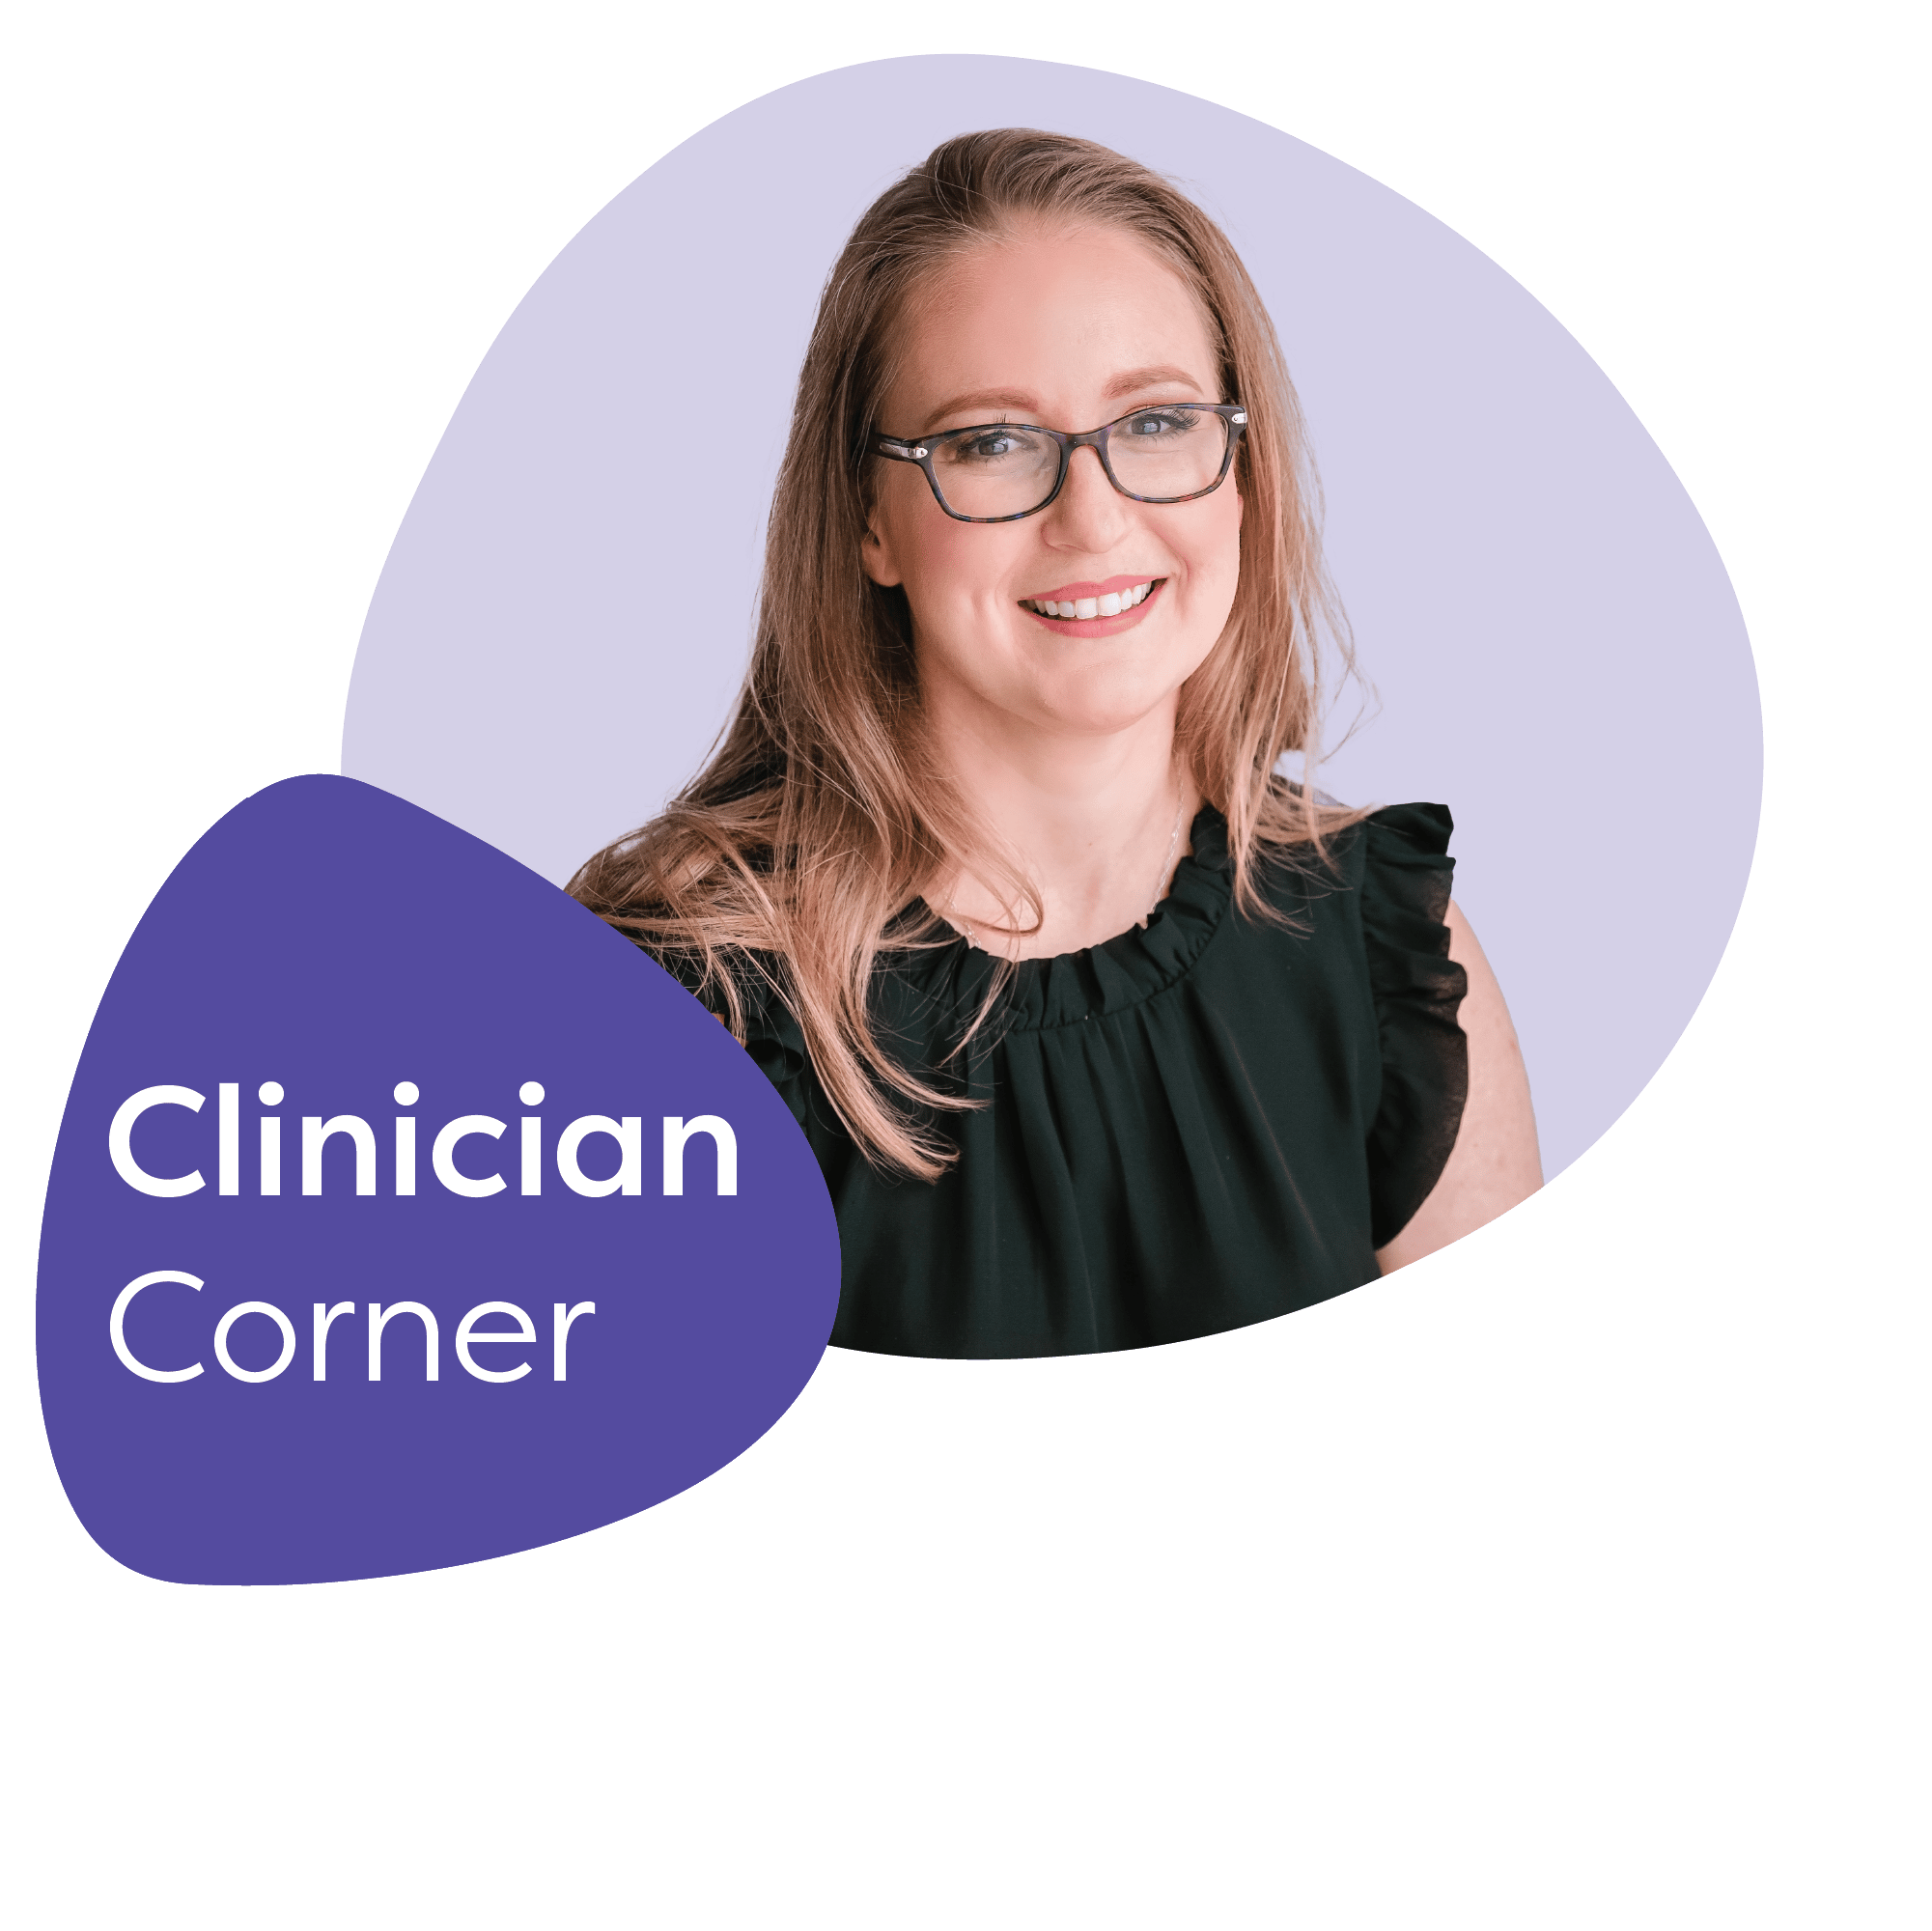 Clinician Corner: Meet Courtney Bearden, PMHNP